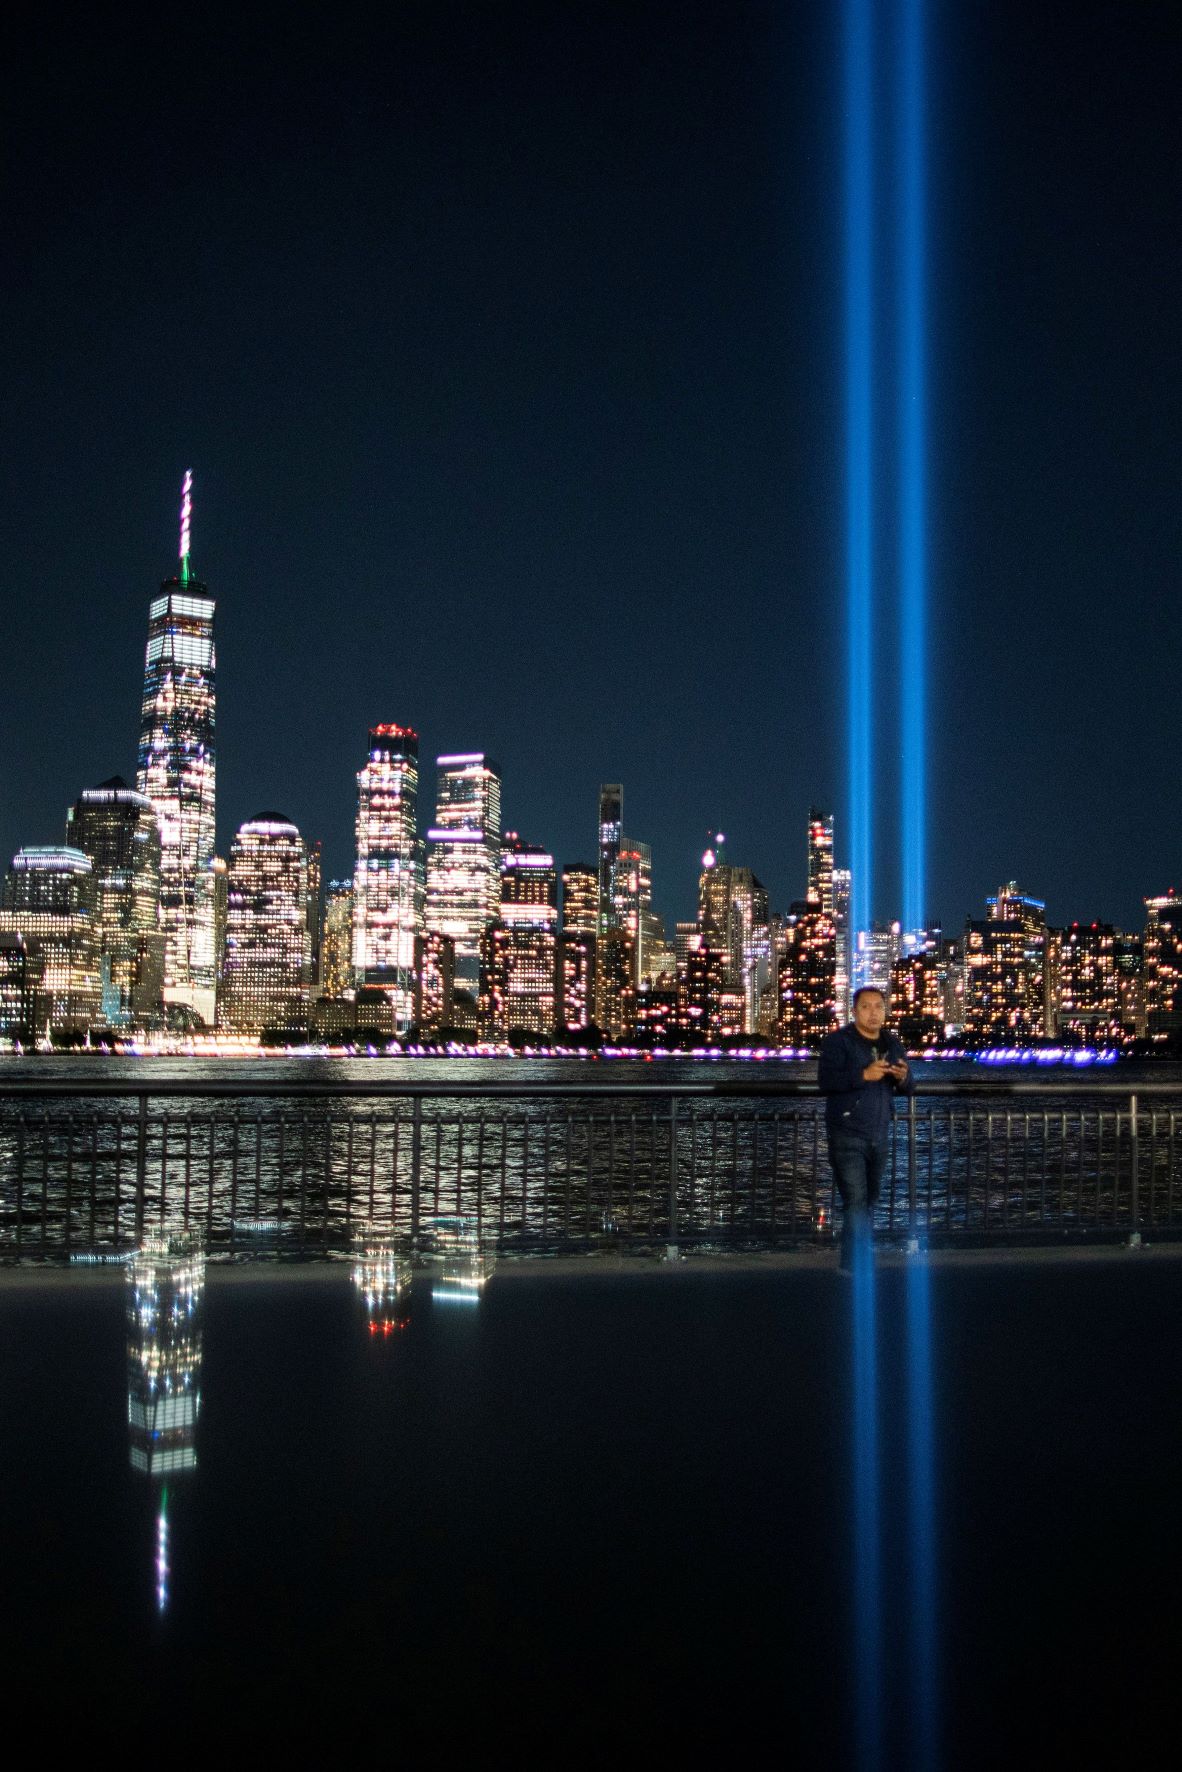 حي مانهاتن في نيويورك ليلاً عشية الذكرى العشرين لضربات الإرهاب في 11/9، مع خطين من الضوء تذكيراً بالبرجين التوأمين